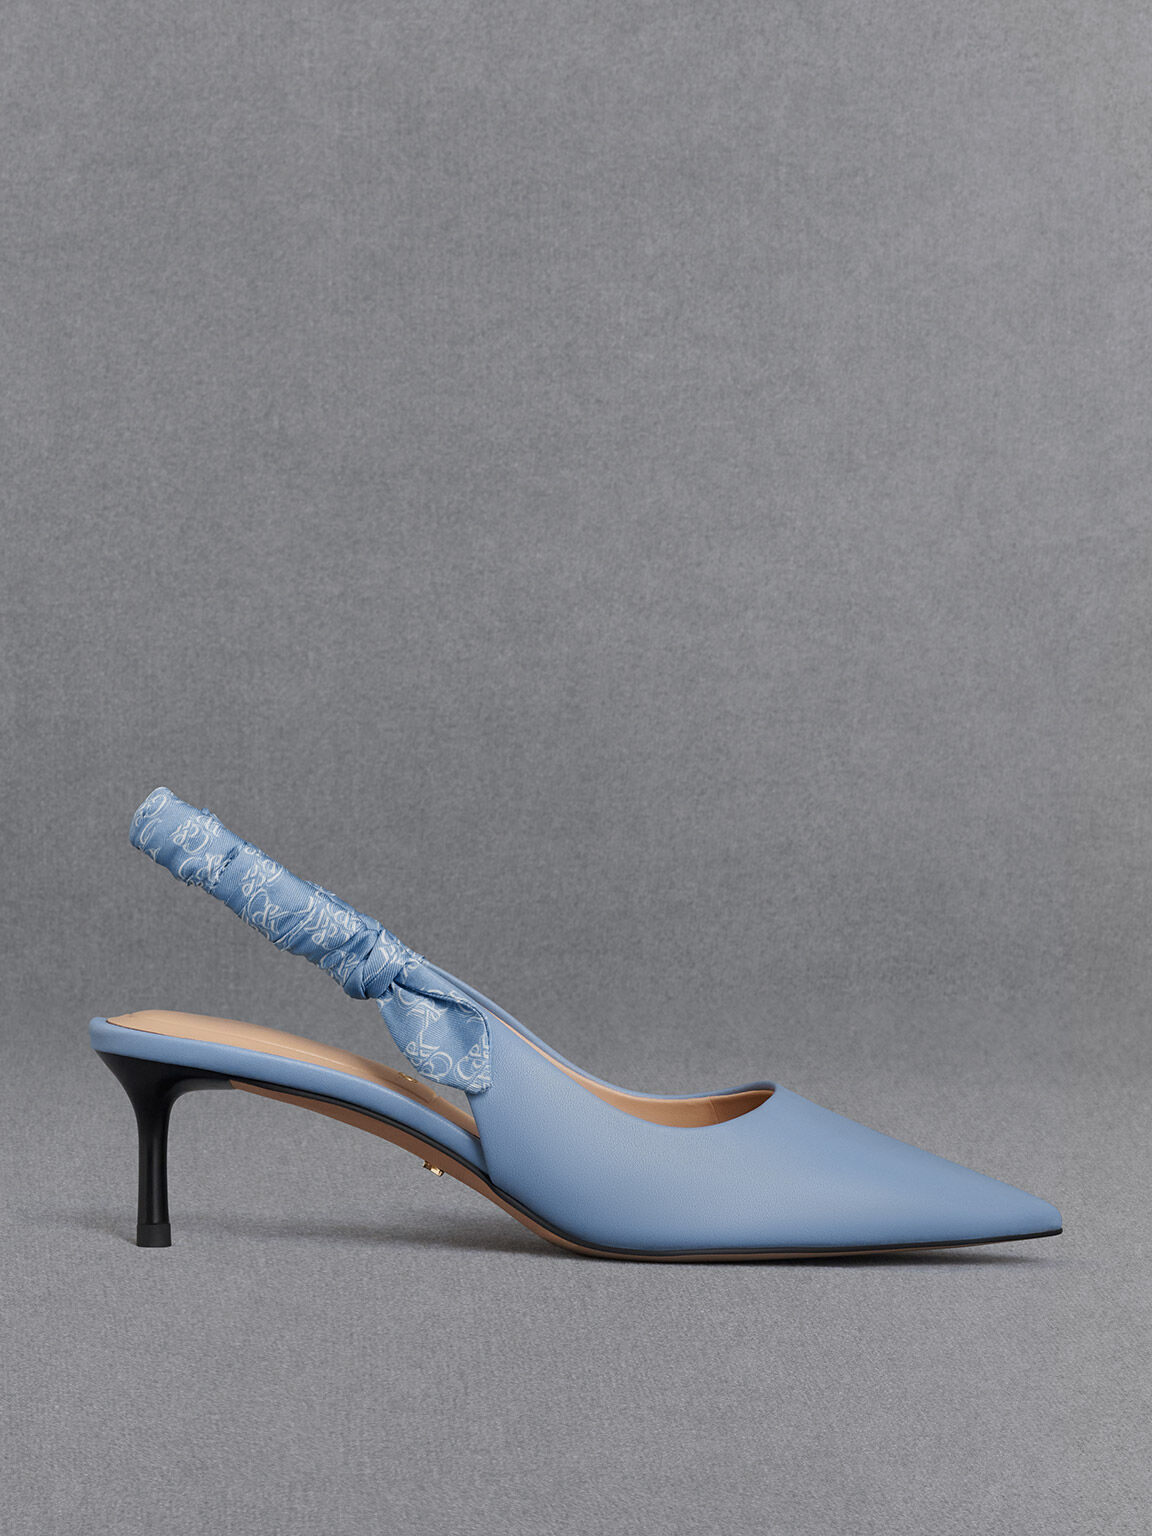 Tie Leg Design Stiletto Heeled Strappy Sandals | Blue shoes heels, Blue  stilettos, Royal blue high heels